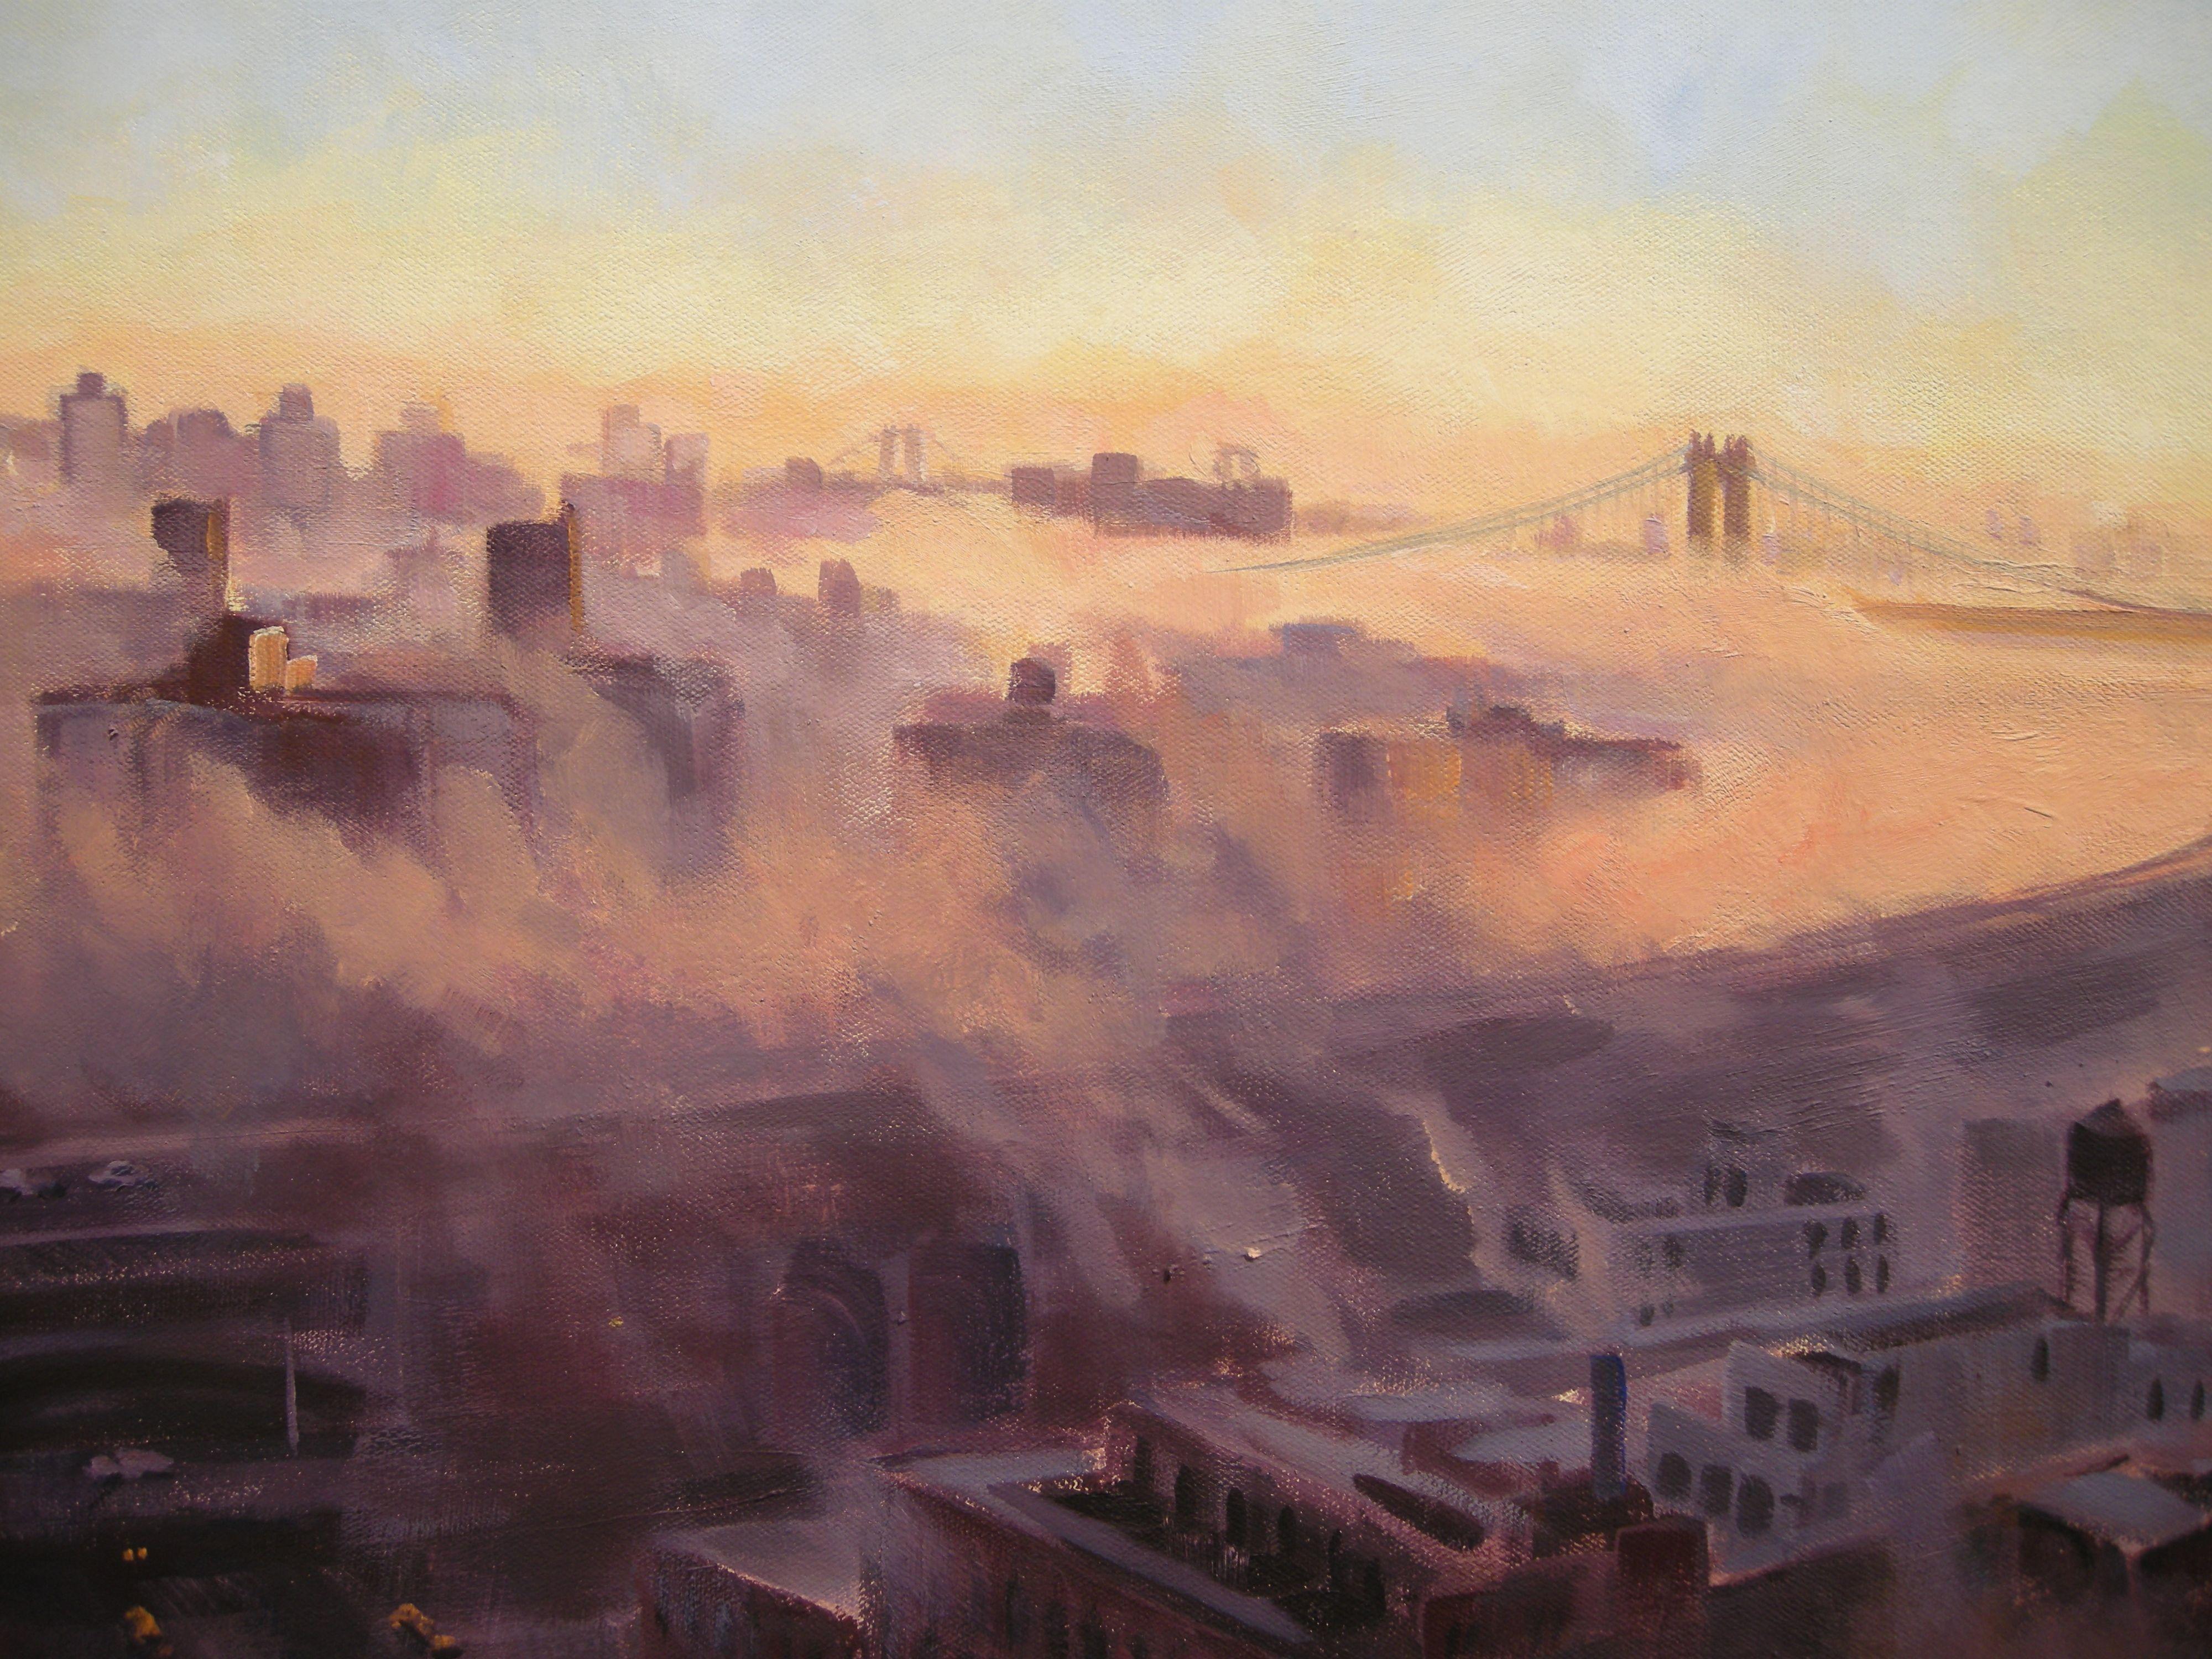 Sunrise Through the Fog, Painting, Oil on Canvas 4